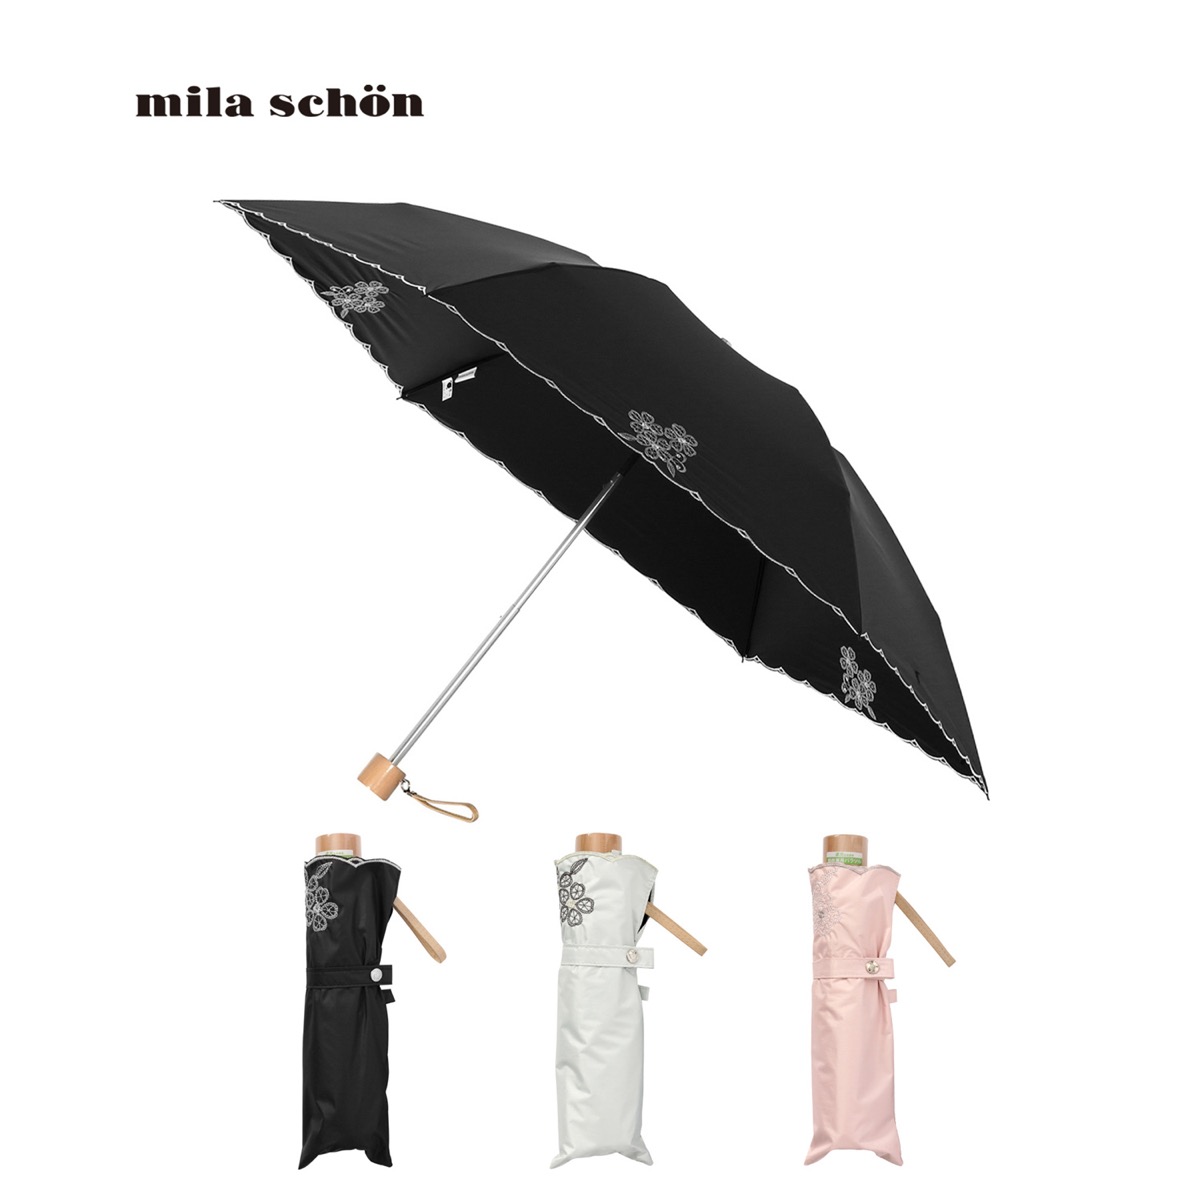 mila schon ミラショーン 晴雨兼用 折りたたみ傘